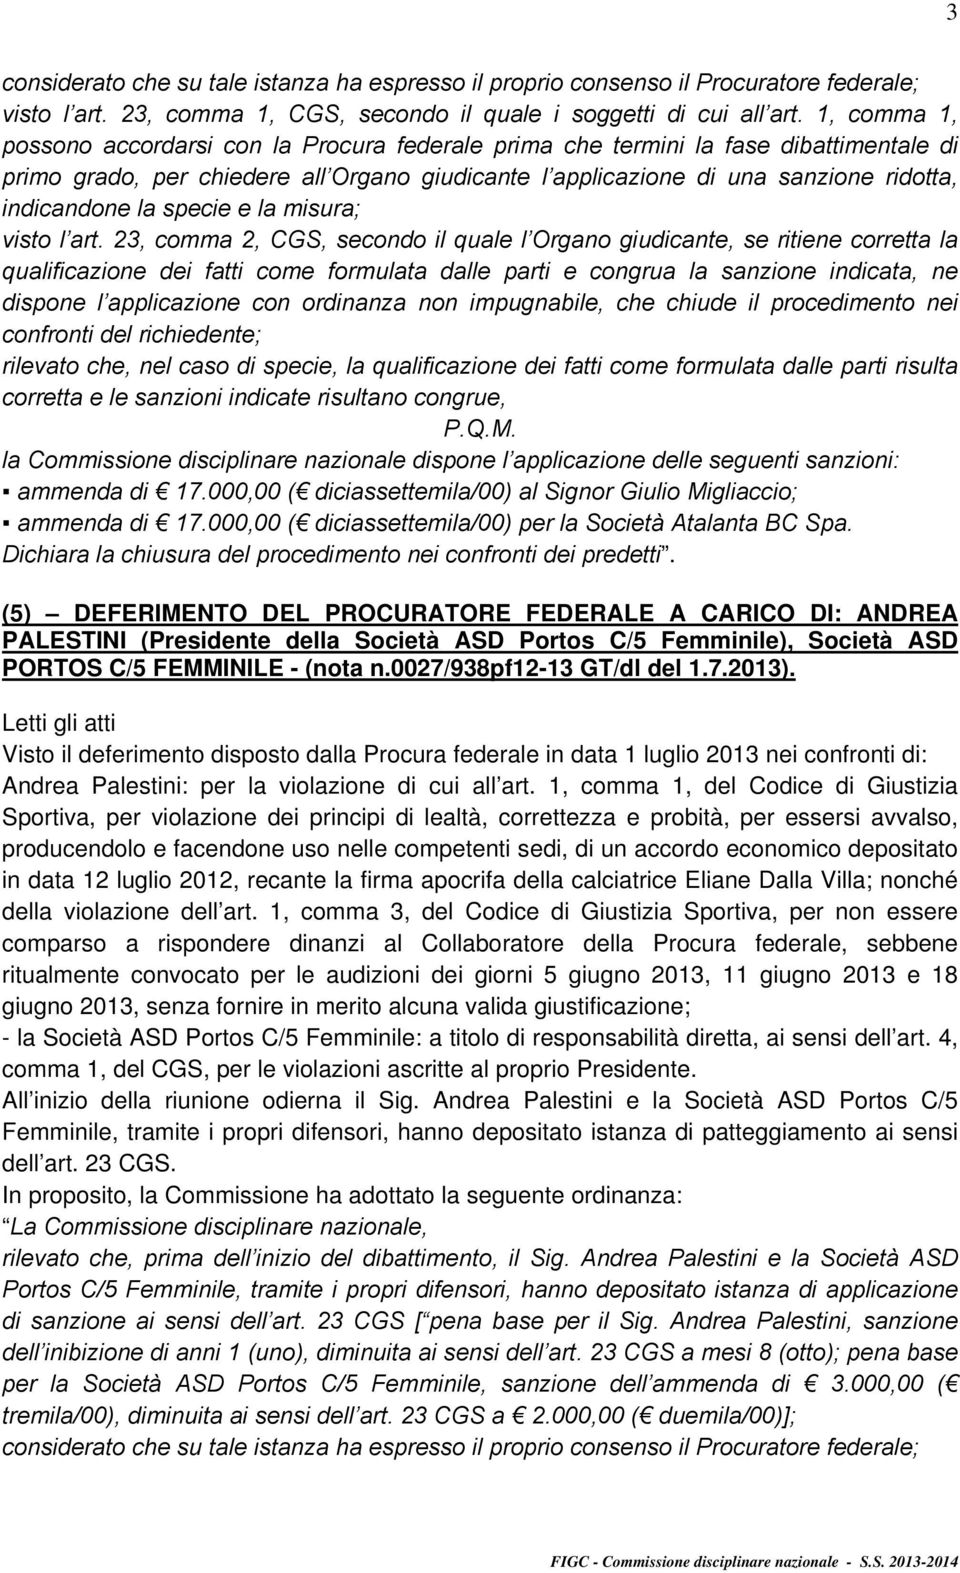 (5) DEFERIMENTO DEL PROCURATORE FEDERALE A CARICO DI: ANDREA PALESTINI (Presidente della Società ASD Portos C/5 Femminile), Società ASD PORTOS C/5 FEMMINILE - (nota n.0027/938pf12-13 GT/dl del 1.7.2013).